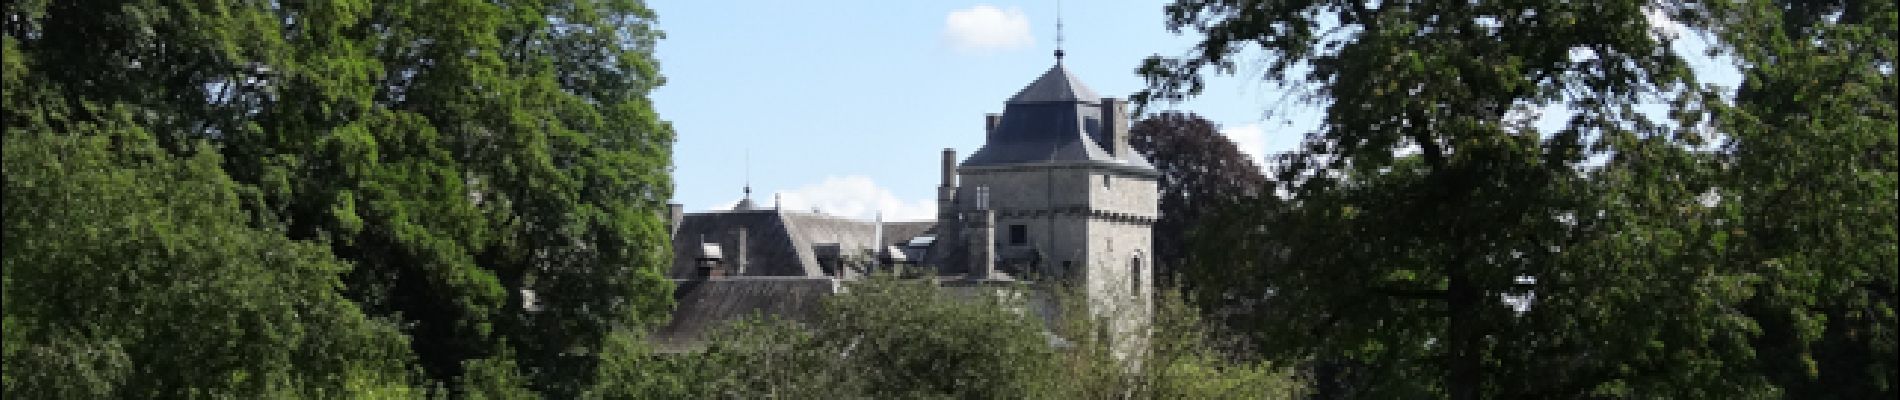 Point d'intérêt Hamoir - Château de Lassus - Photo